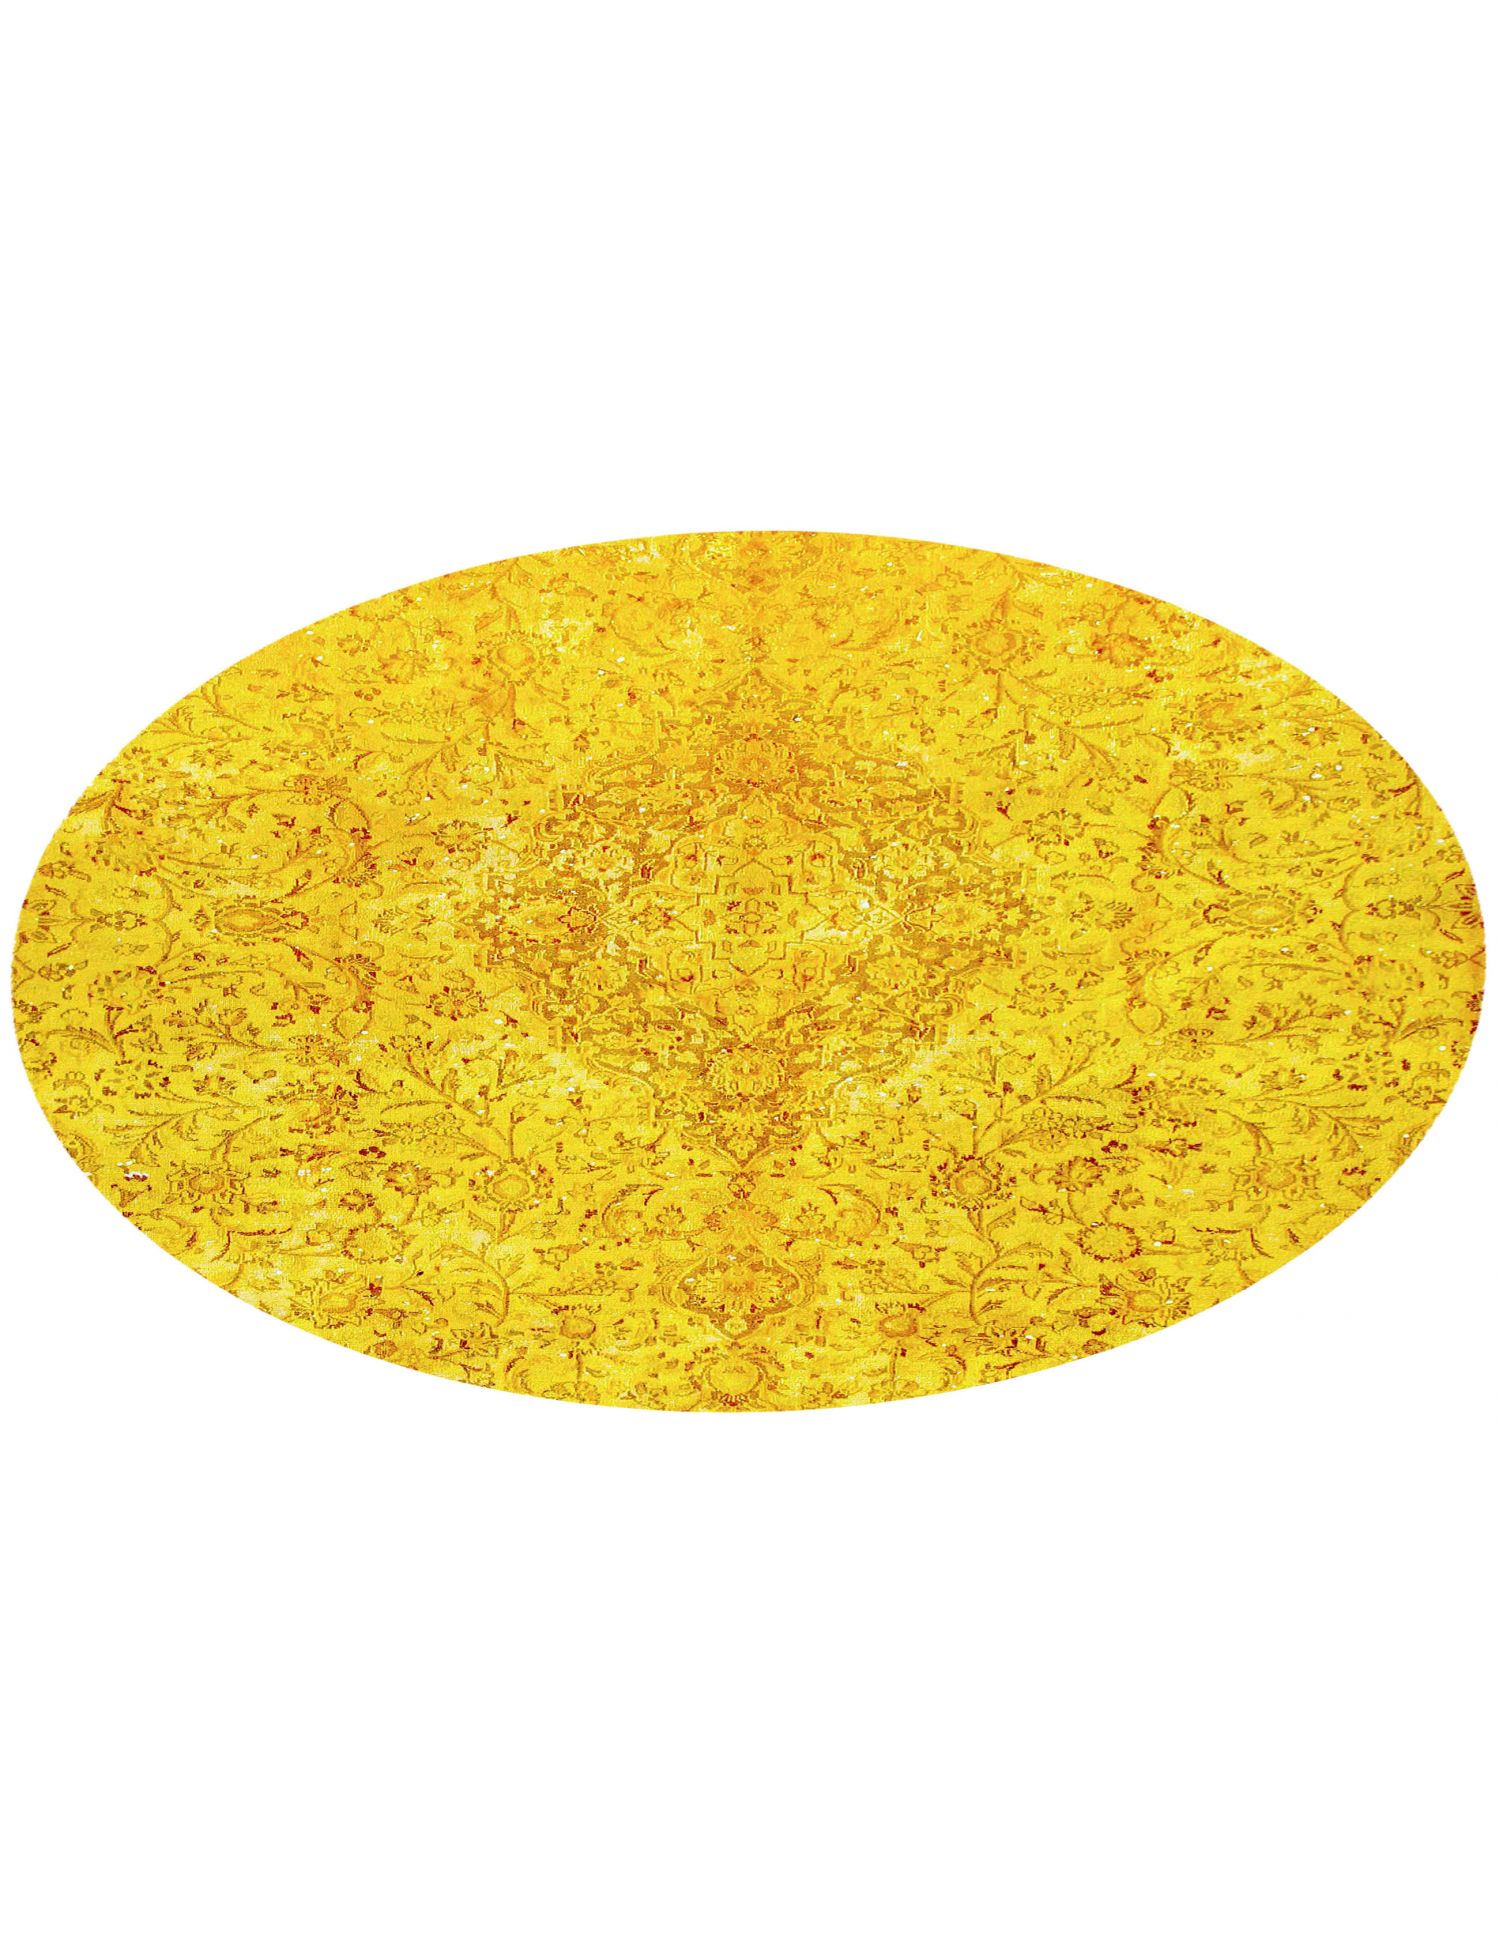 Tappeto vintage persiano  giallo <br/>183 x 183 cm